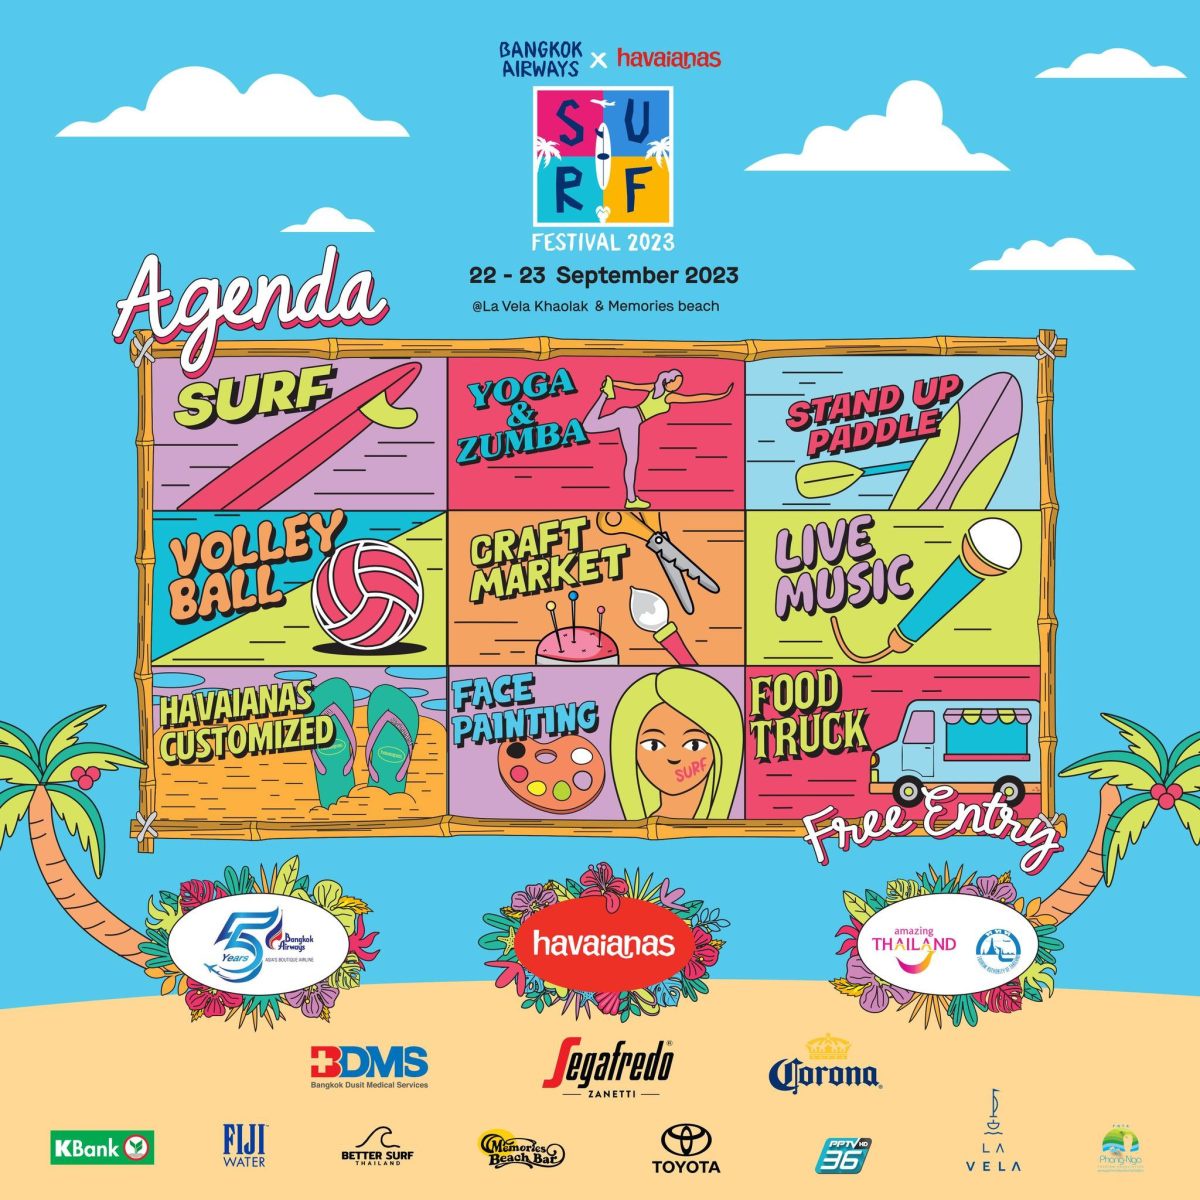 บางกอกแอร์เวย์ส ชวนคนรักกีฬาเอ็กซ์ตรีม สัมผัสประสบการณ์ความสนุกในงาน Bangkok Airways x Havaianas Surf Festival 2023 22 - 23 กันยายนนี้